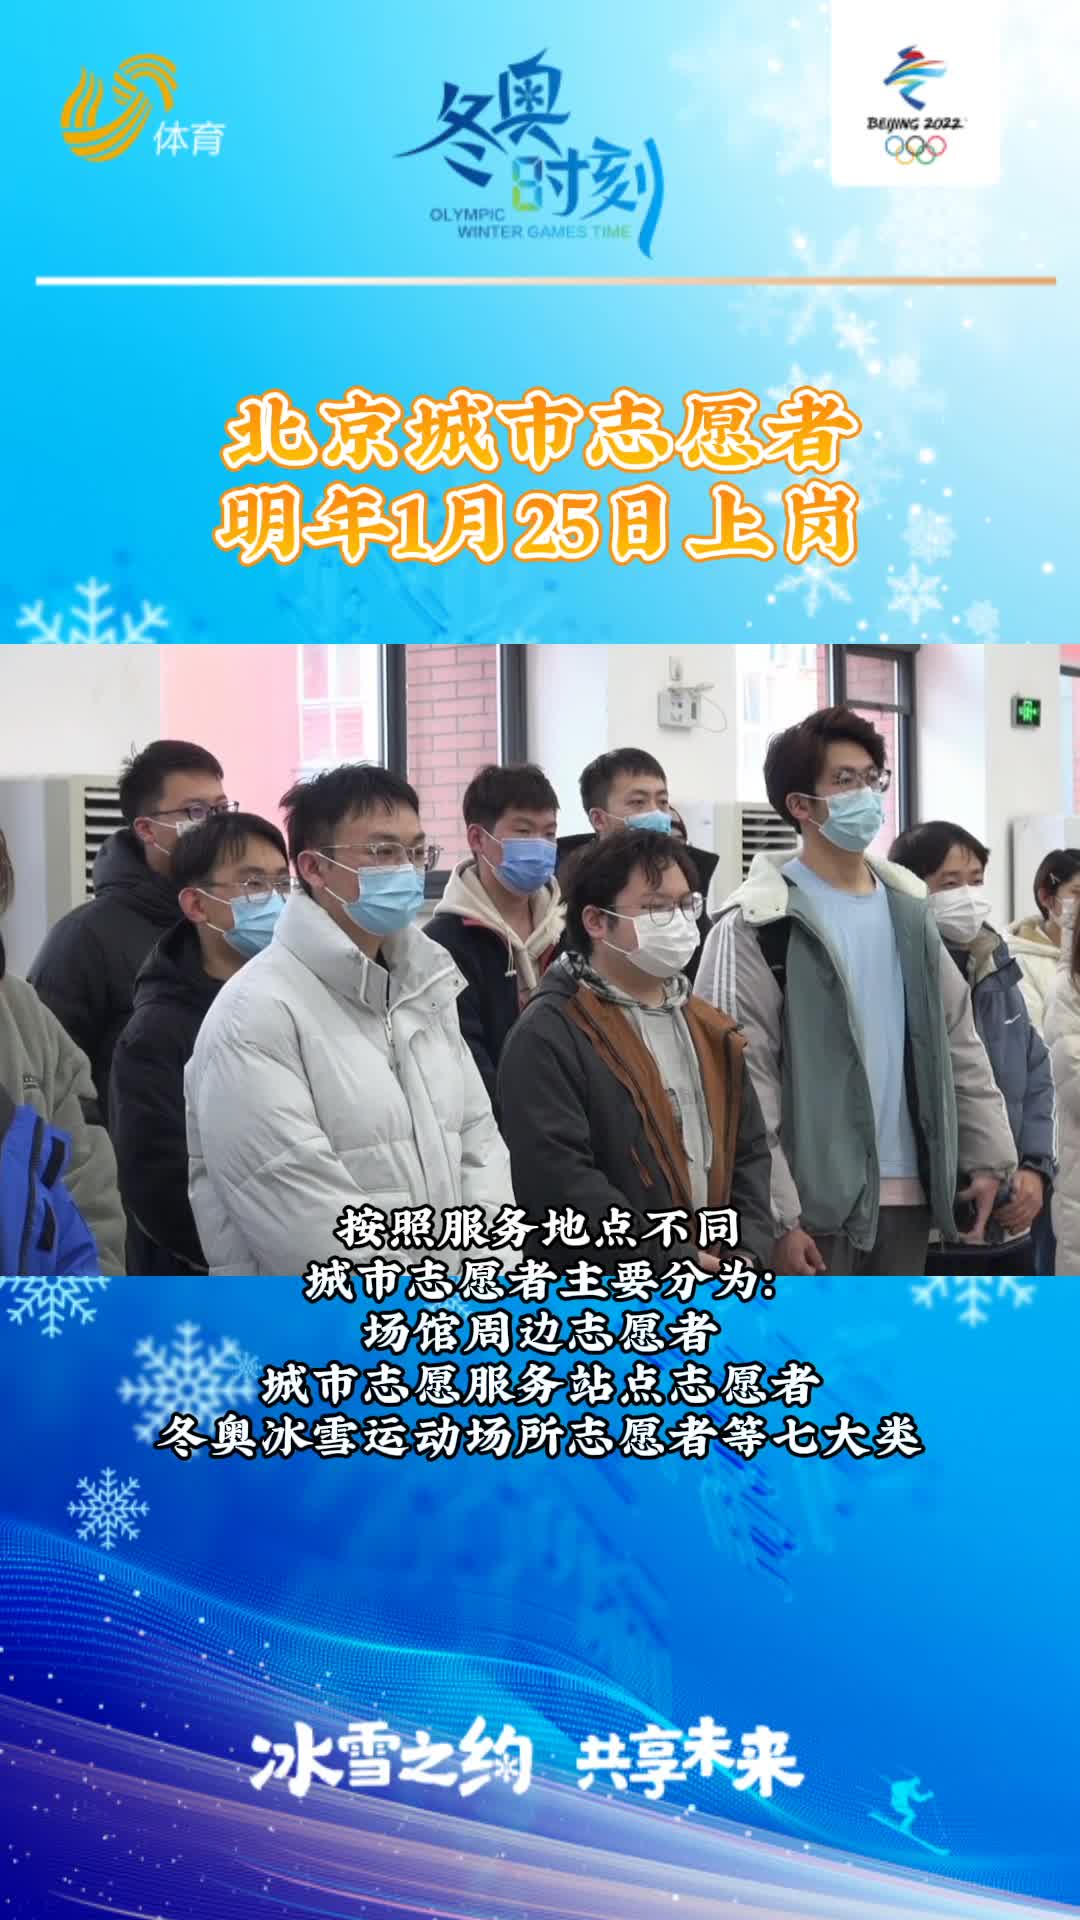 冬奥时刻丨北京城市志愿者明年1月25日上岗